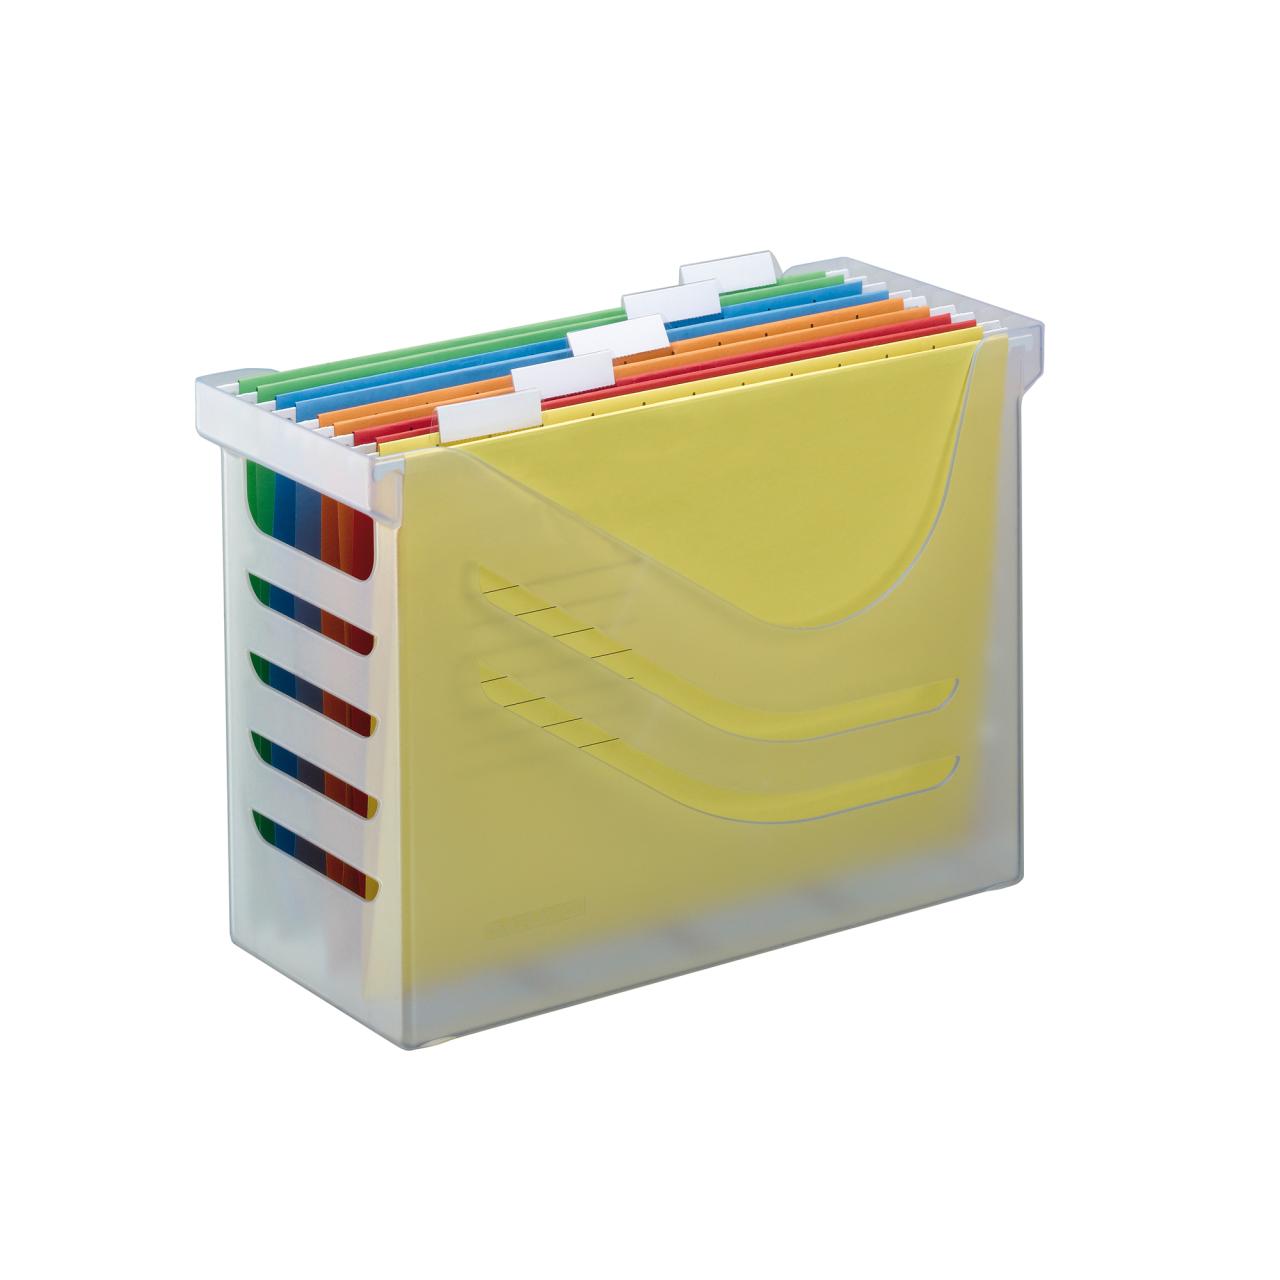 Suspension File Box with 5 Suspension Files